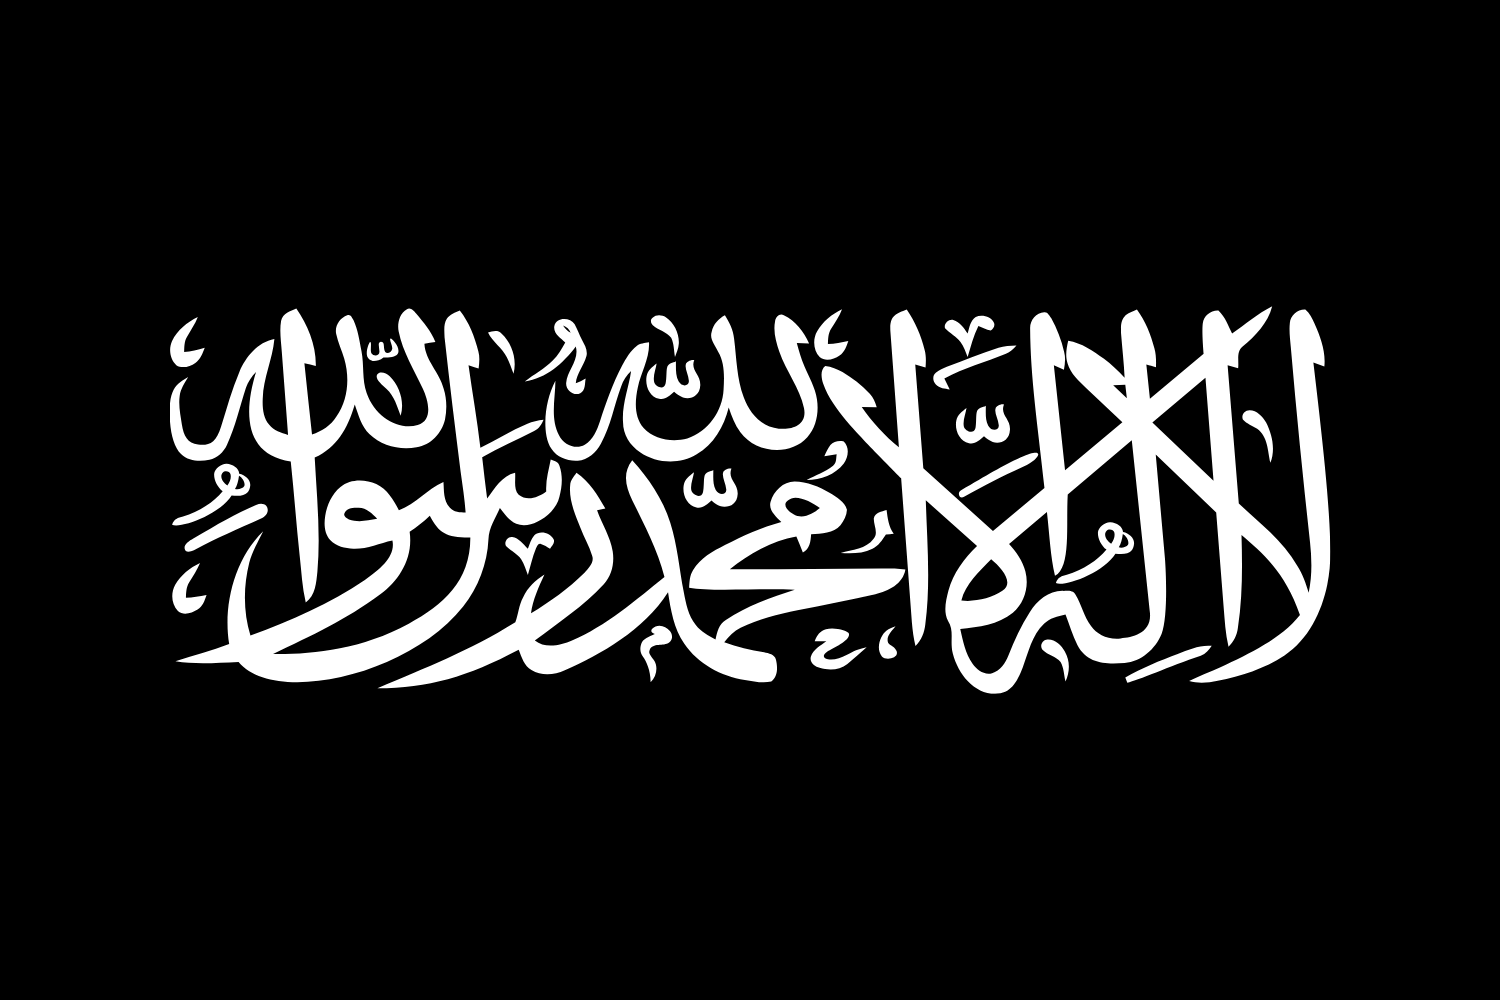 abbasid caliphate - Flag Creator